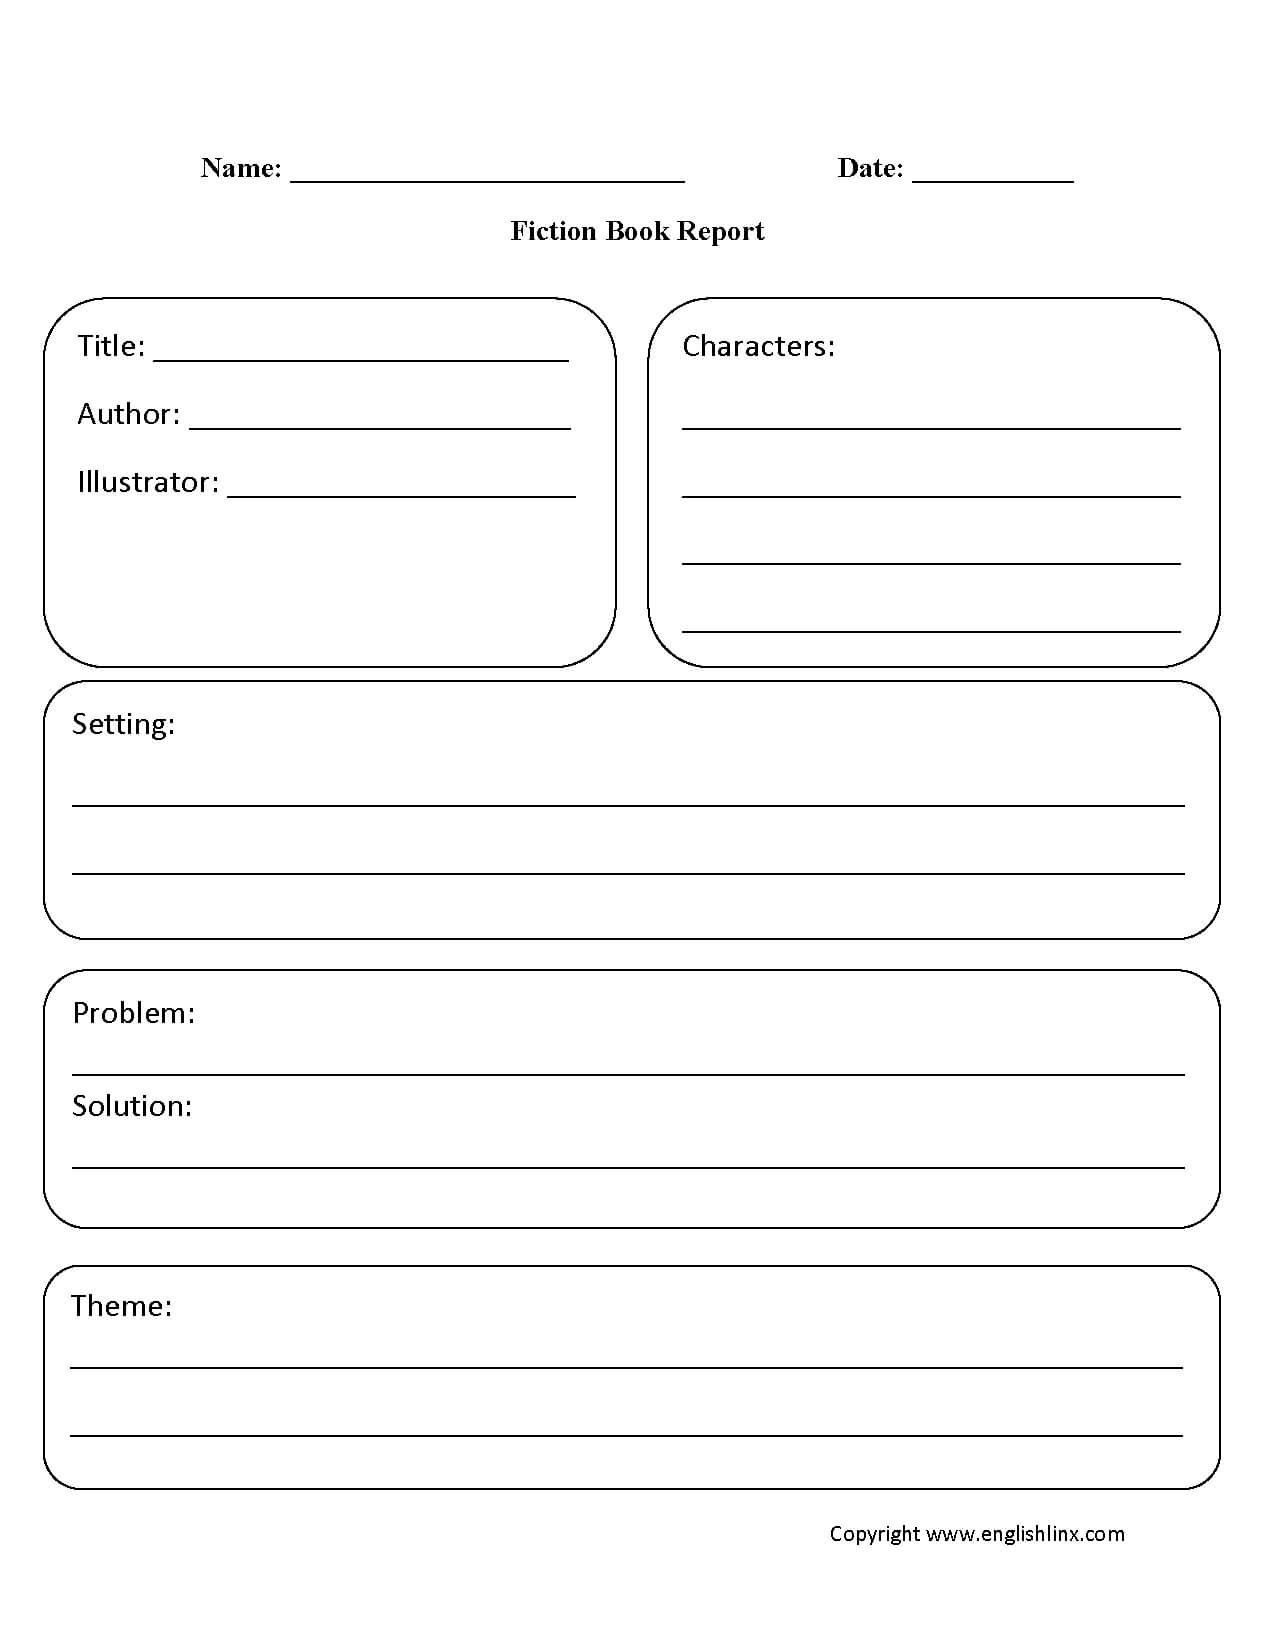 Fiction Book Report Template Grade 1 | Non Professional Inside Book Report Template Grade 1